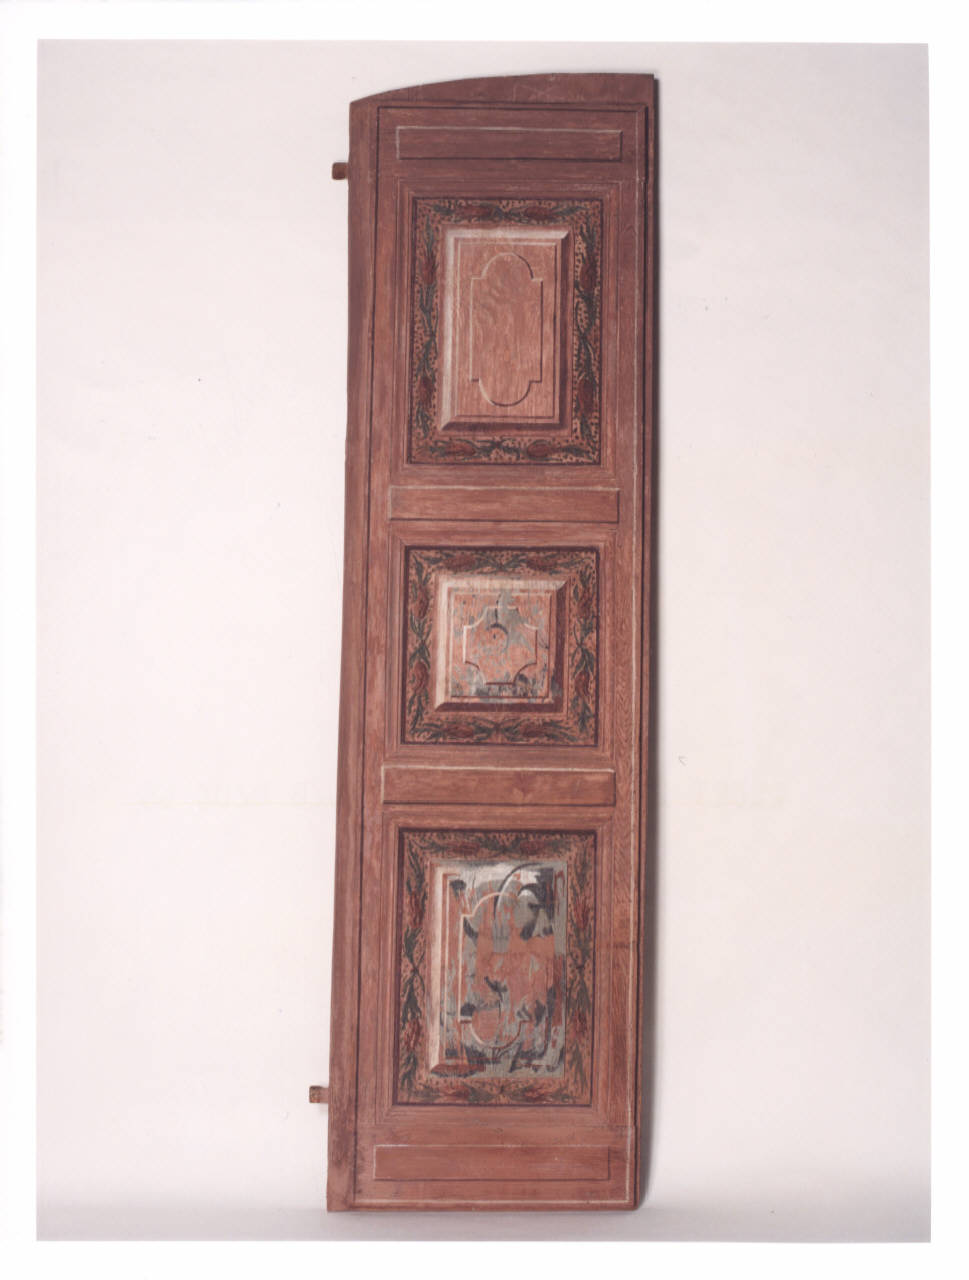 motivi decorativi floreali (scuri di finestra dipinti) - manifattura lombarda (prima metà sec. XVIII)